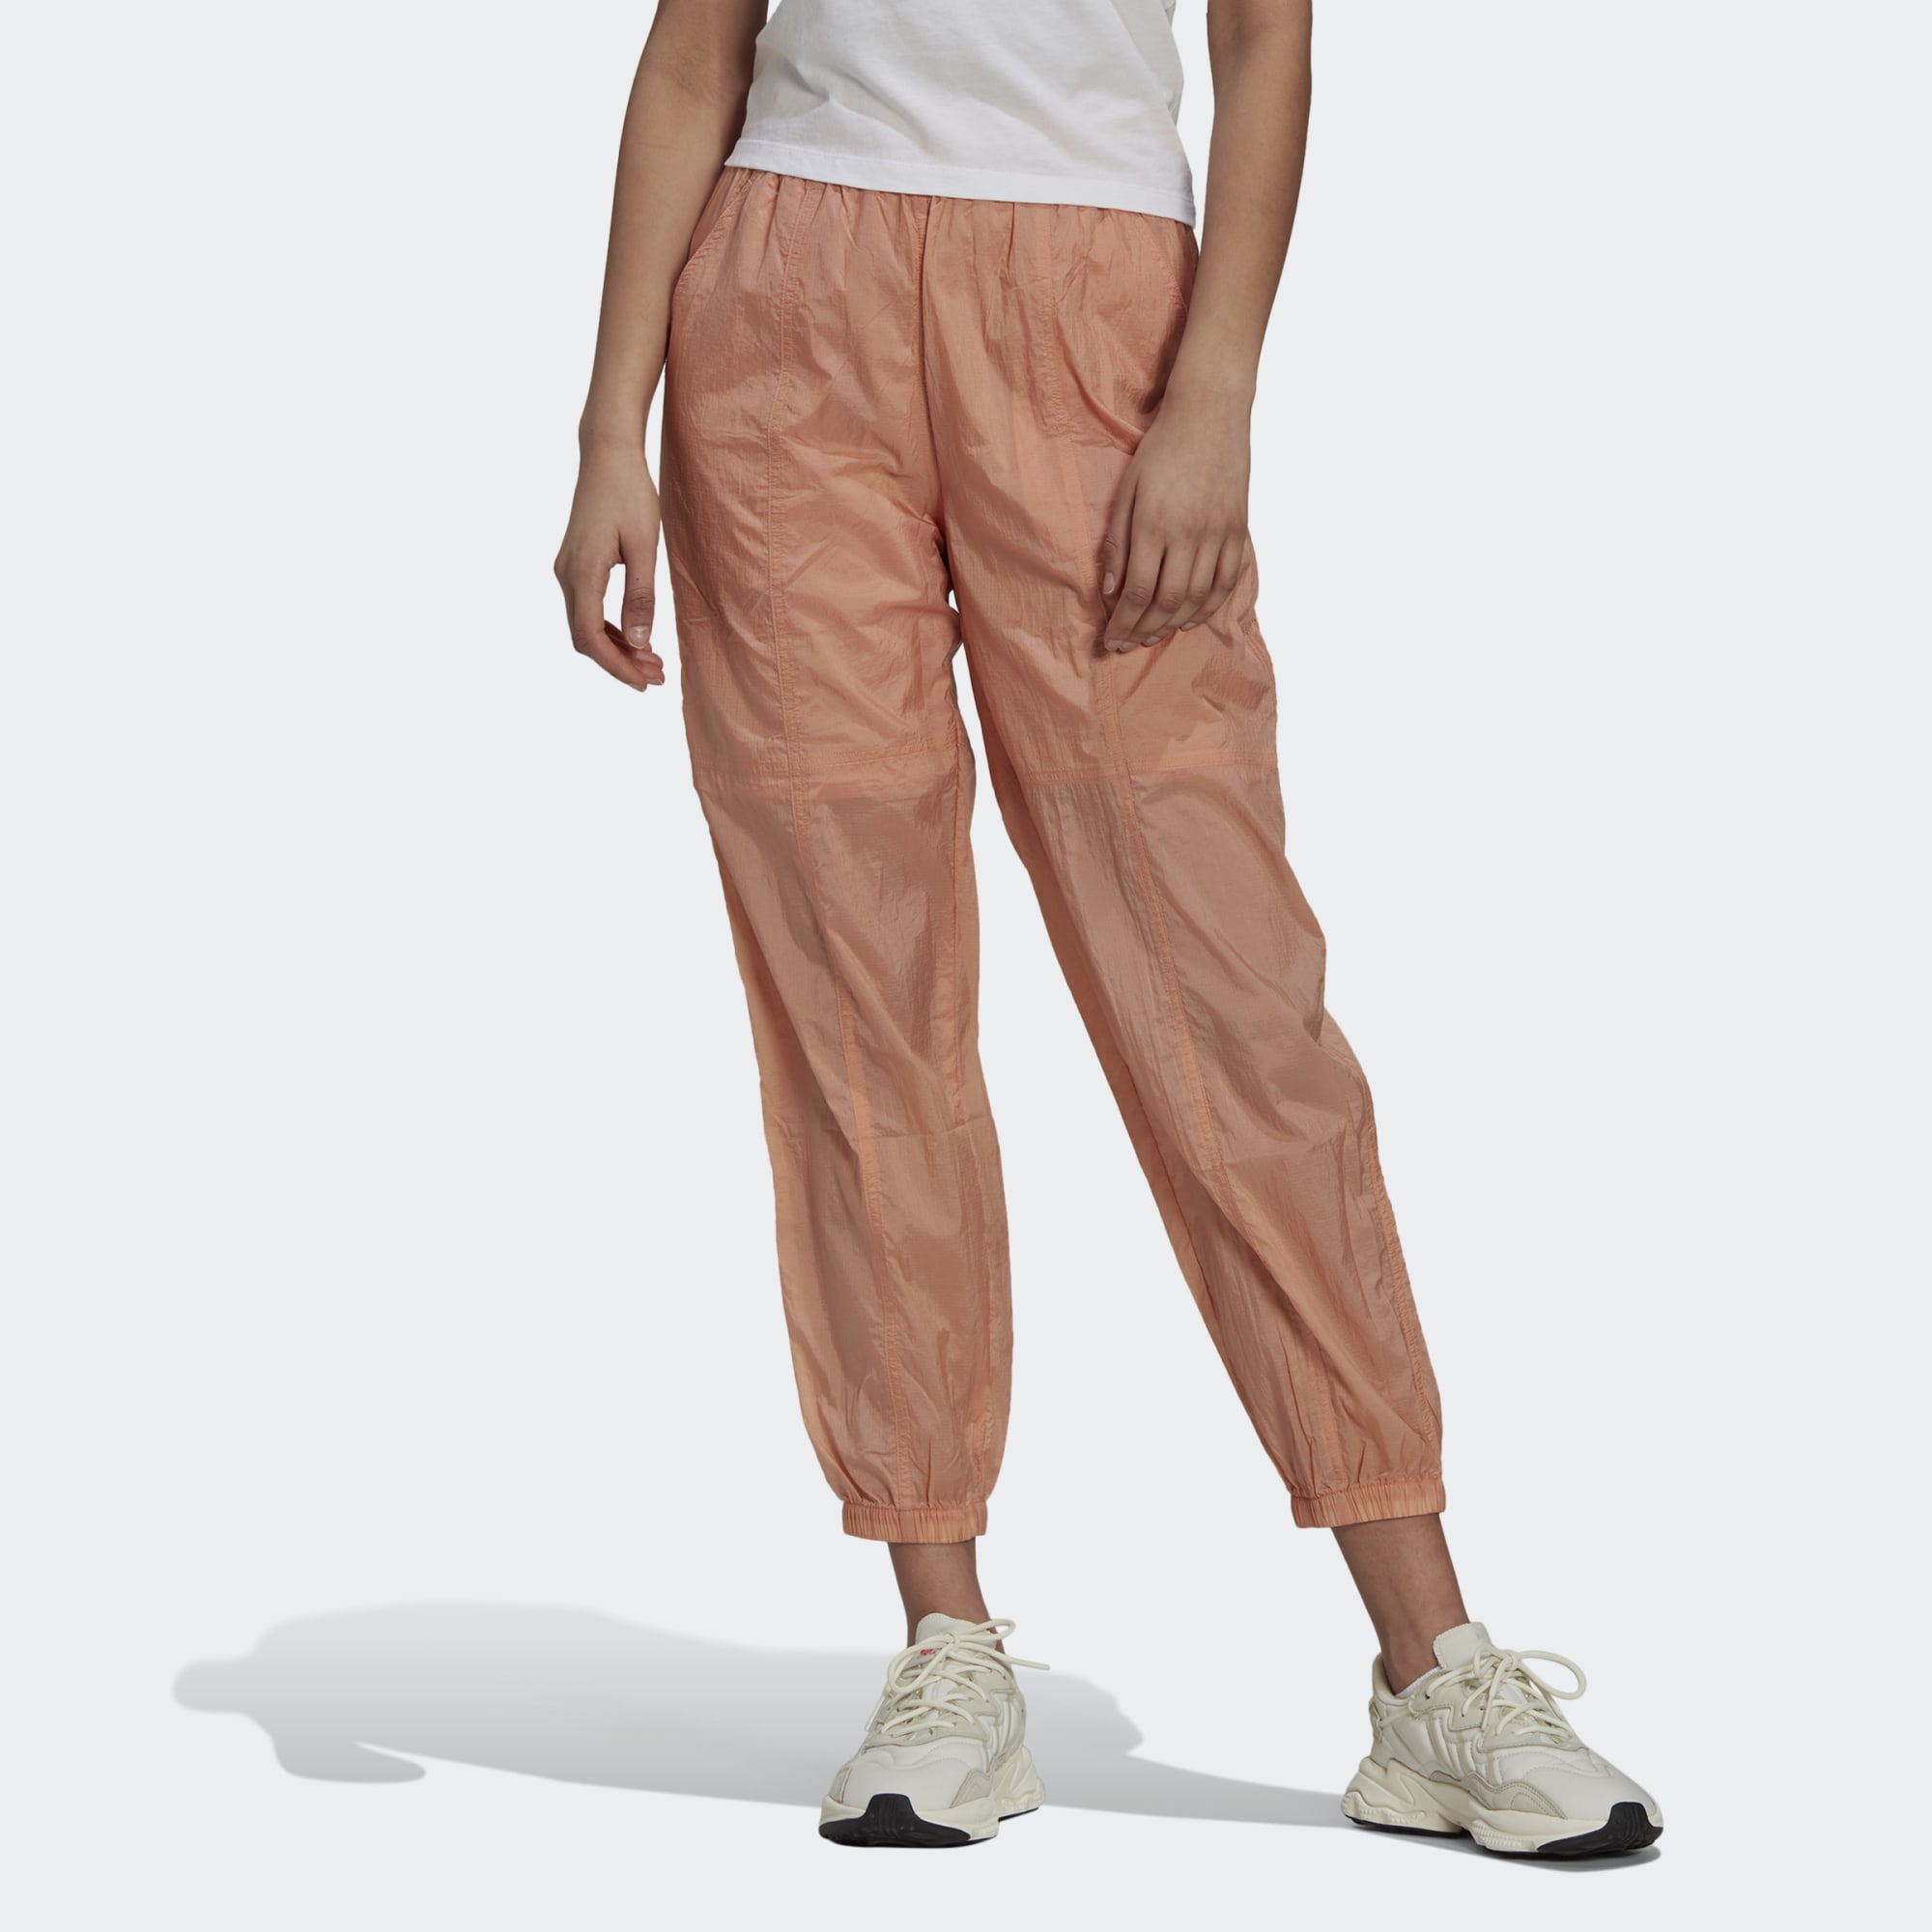 Спортивные брюки женские Adidas H11421 розовые 34